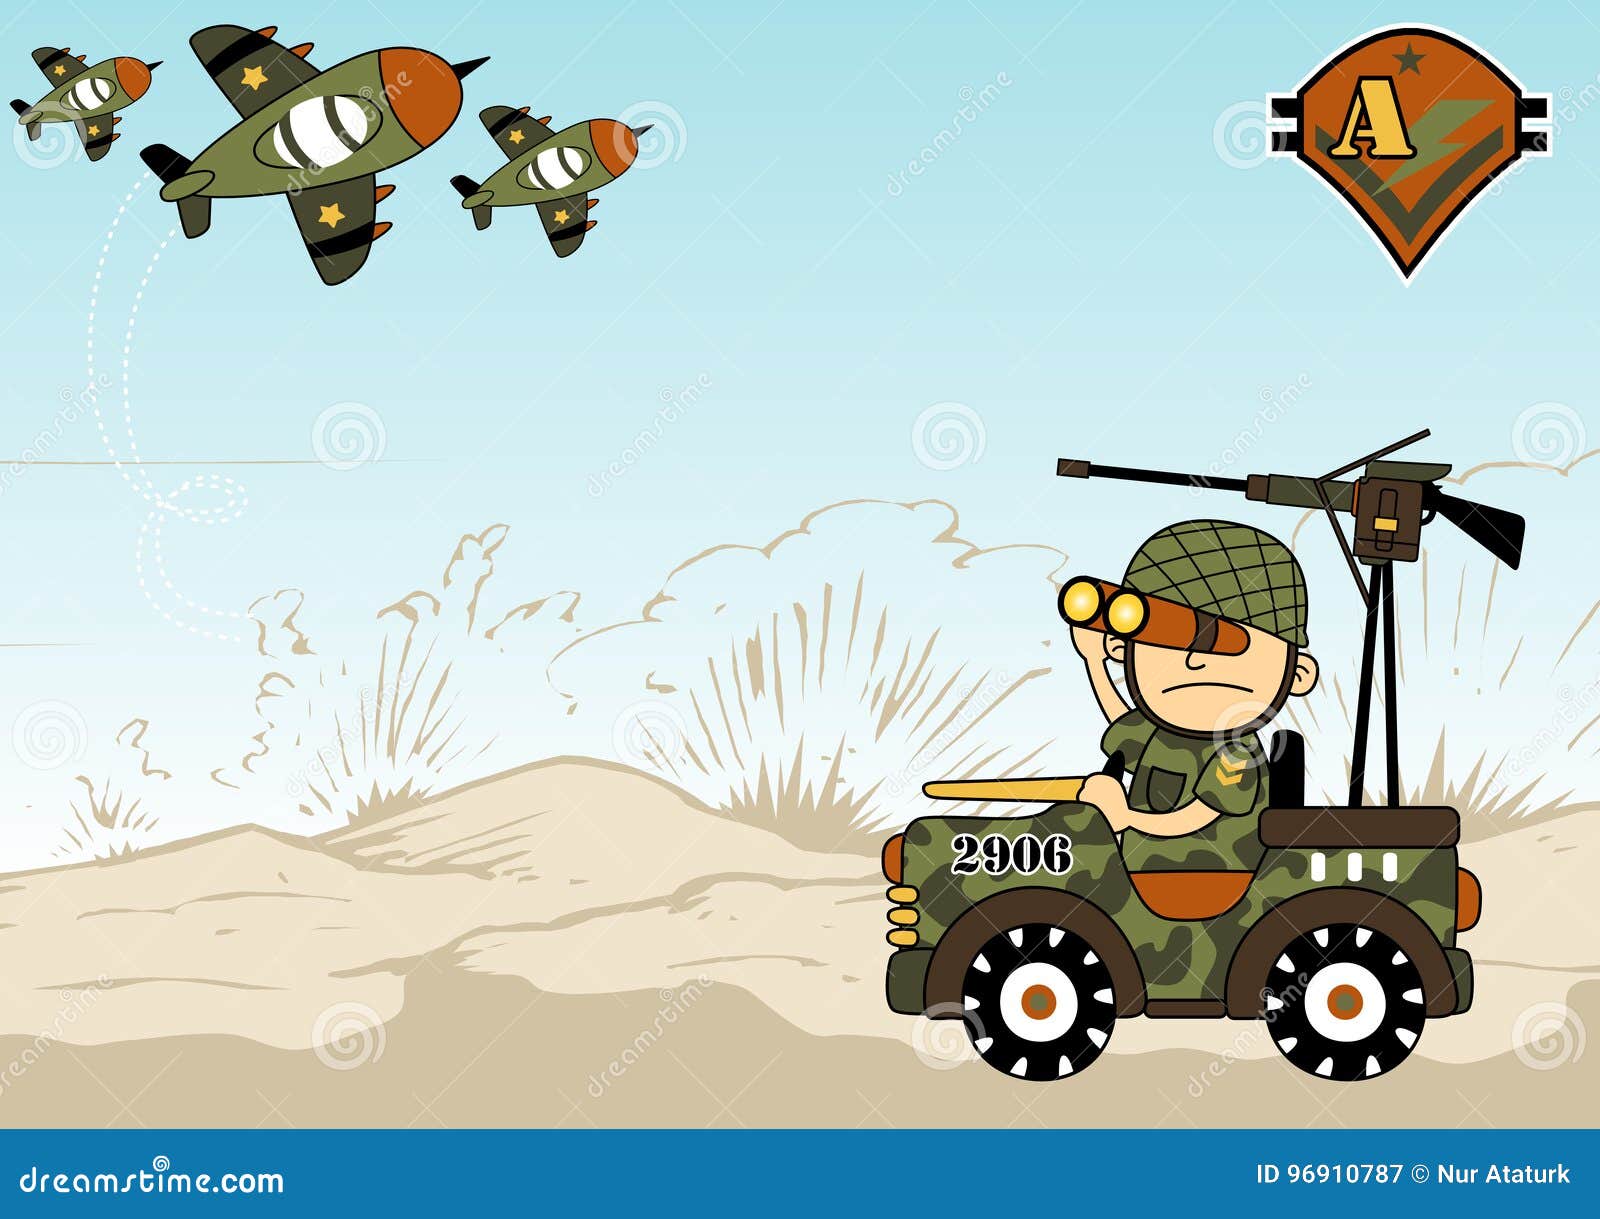 World war cartoon stock vector. Illustration of helmet - 96910787